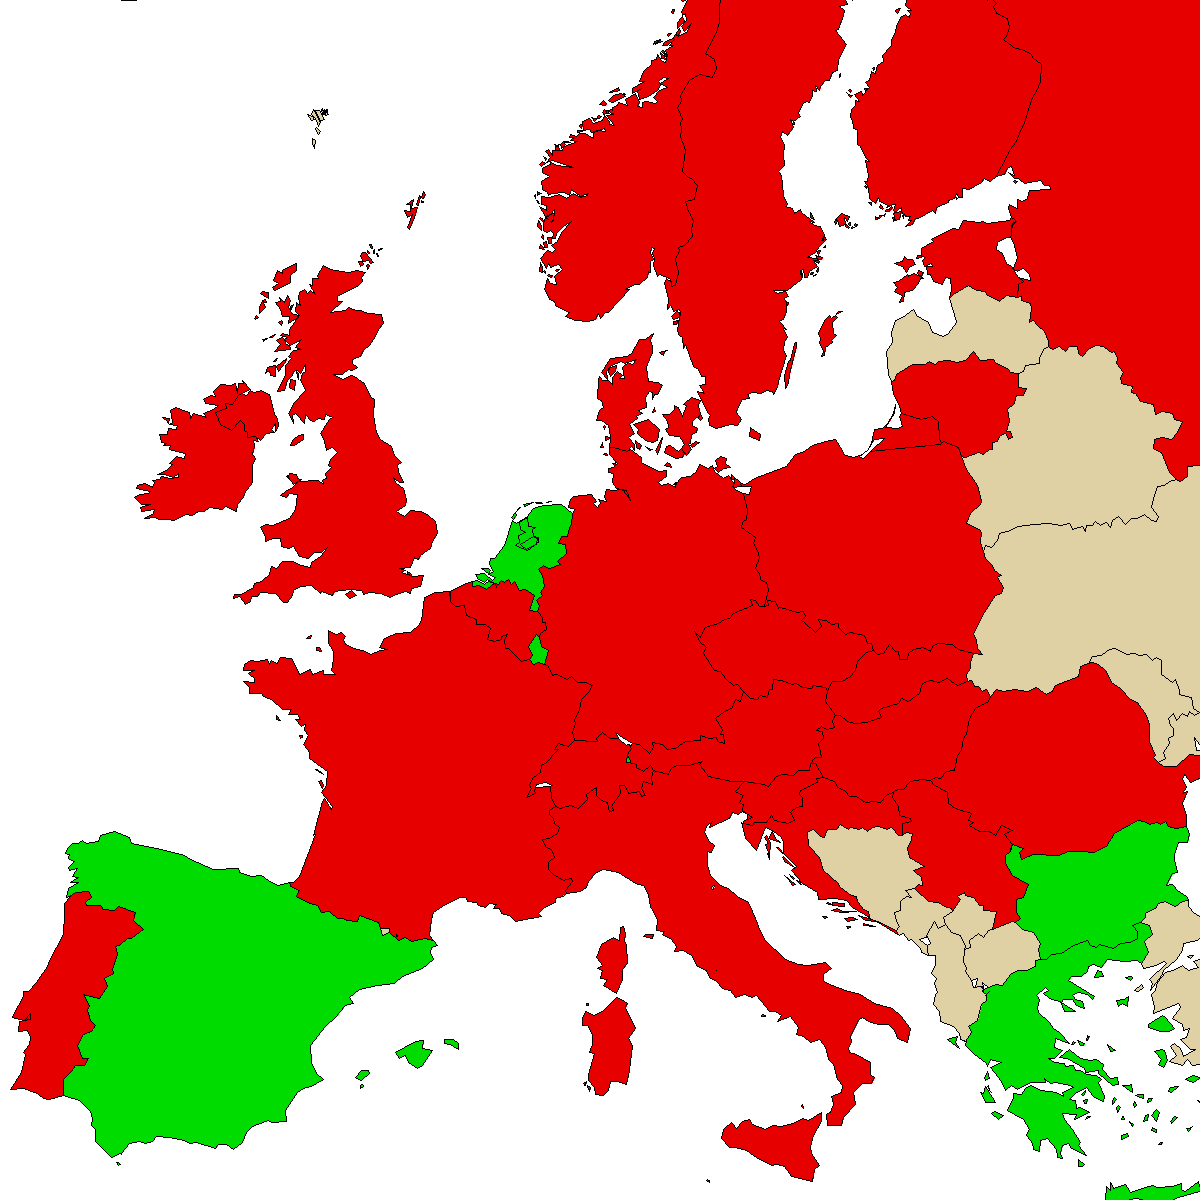 mapa de información legal para nuestro producto 3MMC, verde son países sin prohibición, rojo con prohibición, gris es desconocido